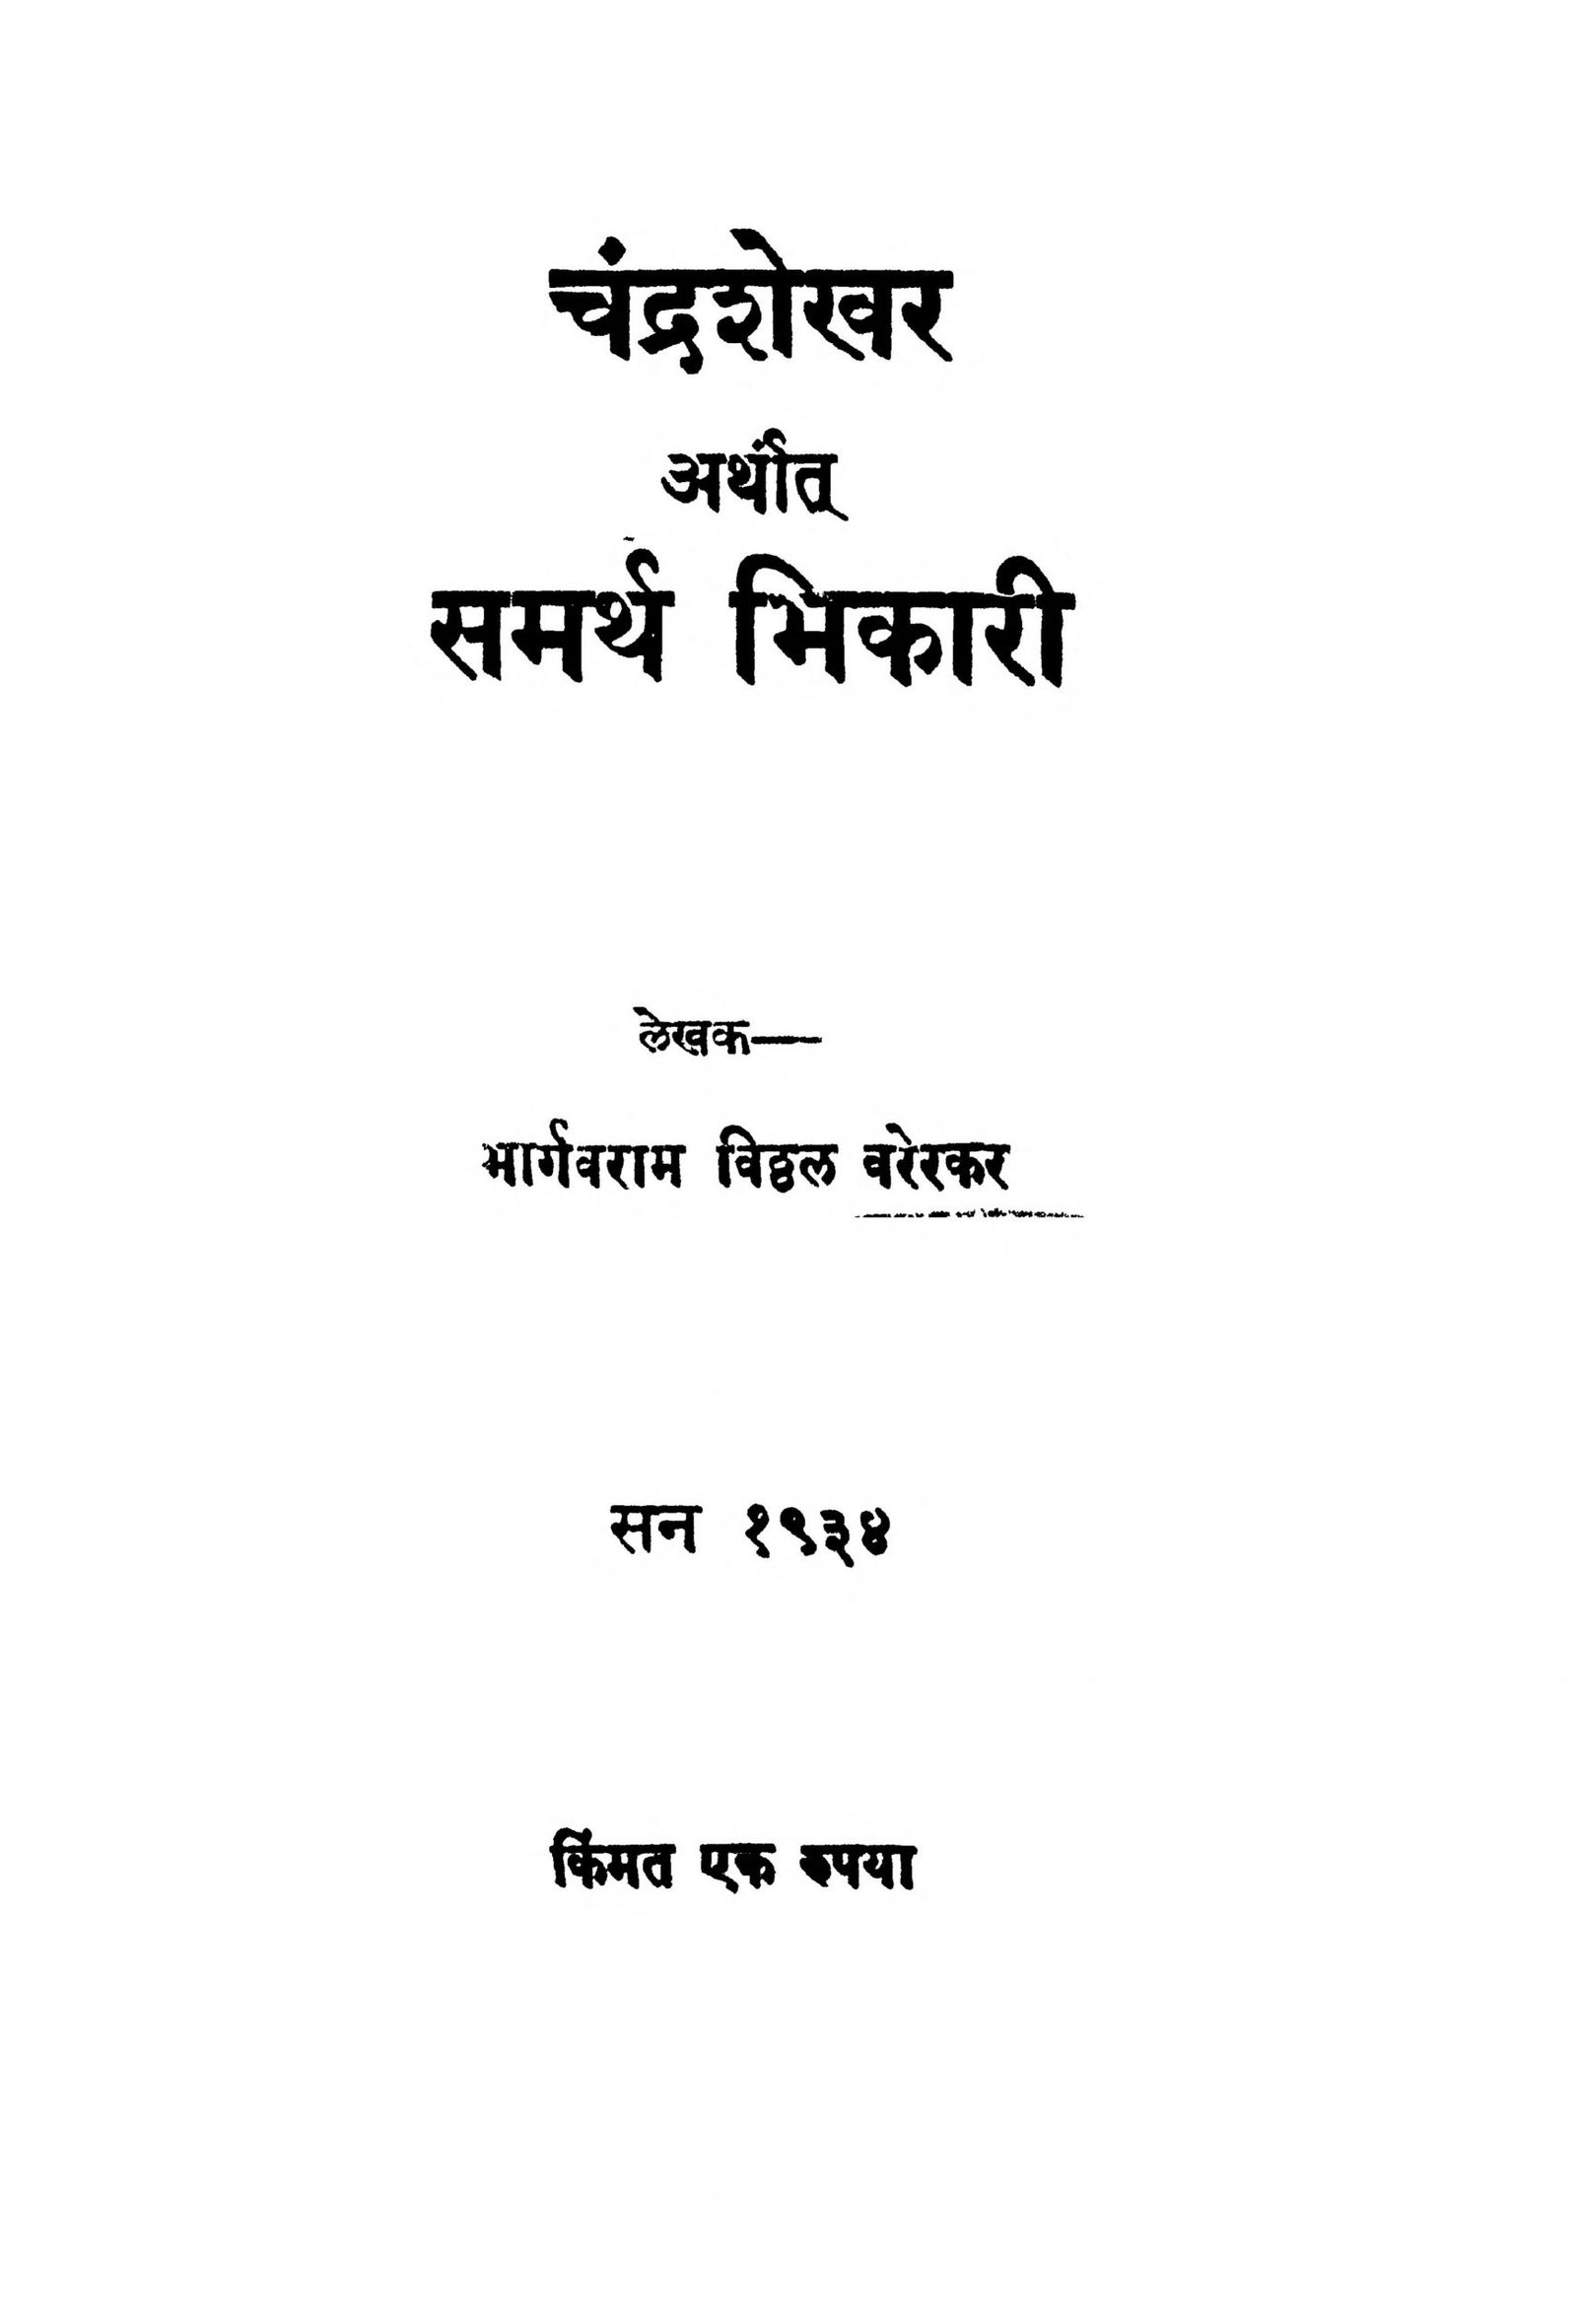 Chandrashekhar Arthat Samarth Bhikari